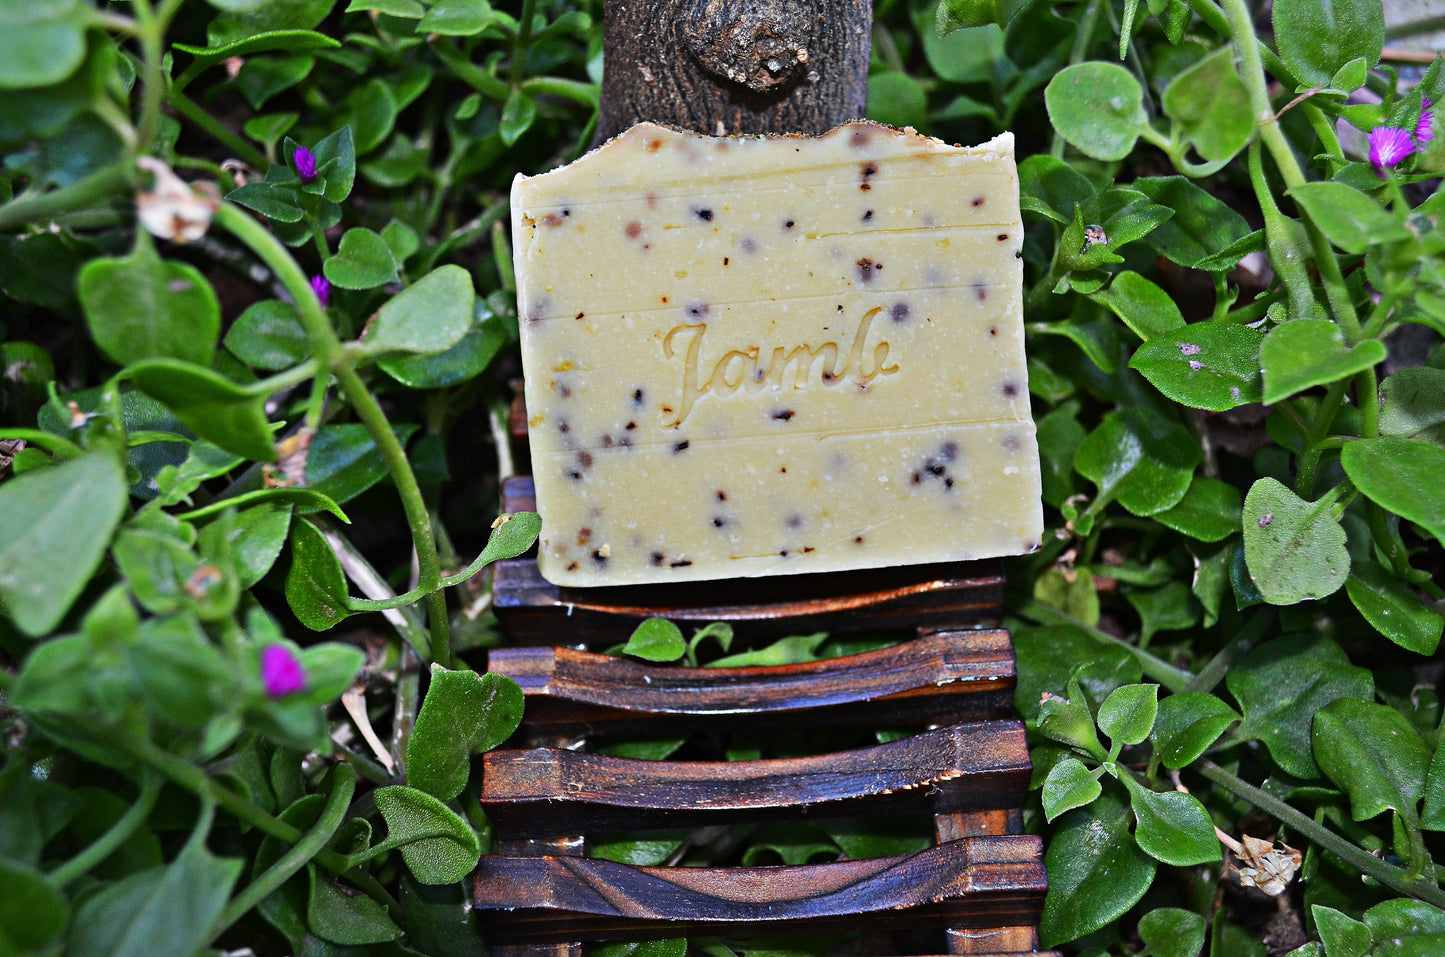 Set Jabón Natural + Jabonera Madera de Bambú - Pack especial para regalo, jabón natural, jabón artesano, sin parabenos, cruelty free.